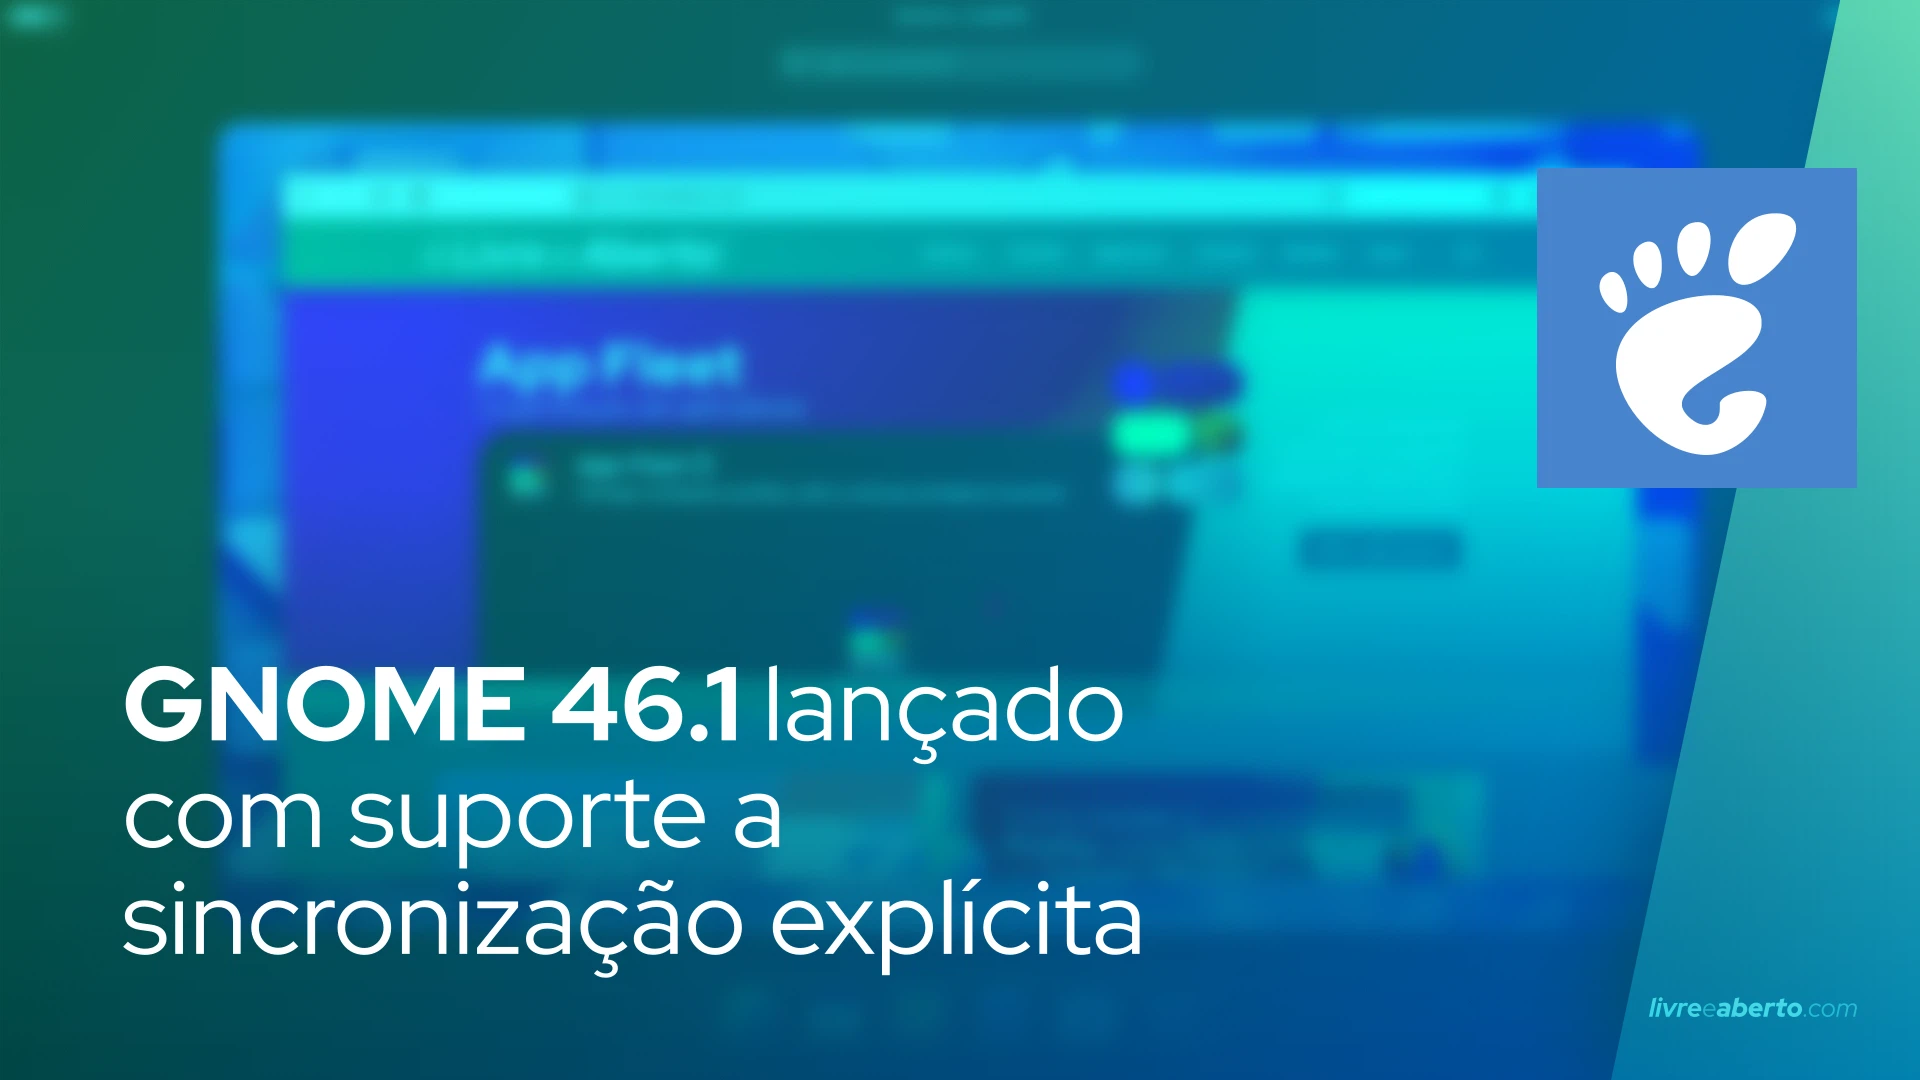 GNOME 46.1 lançado com suporte a sincronização explícita